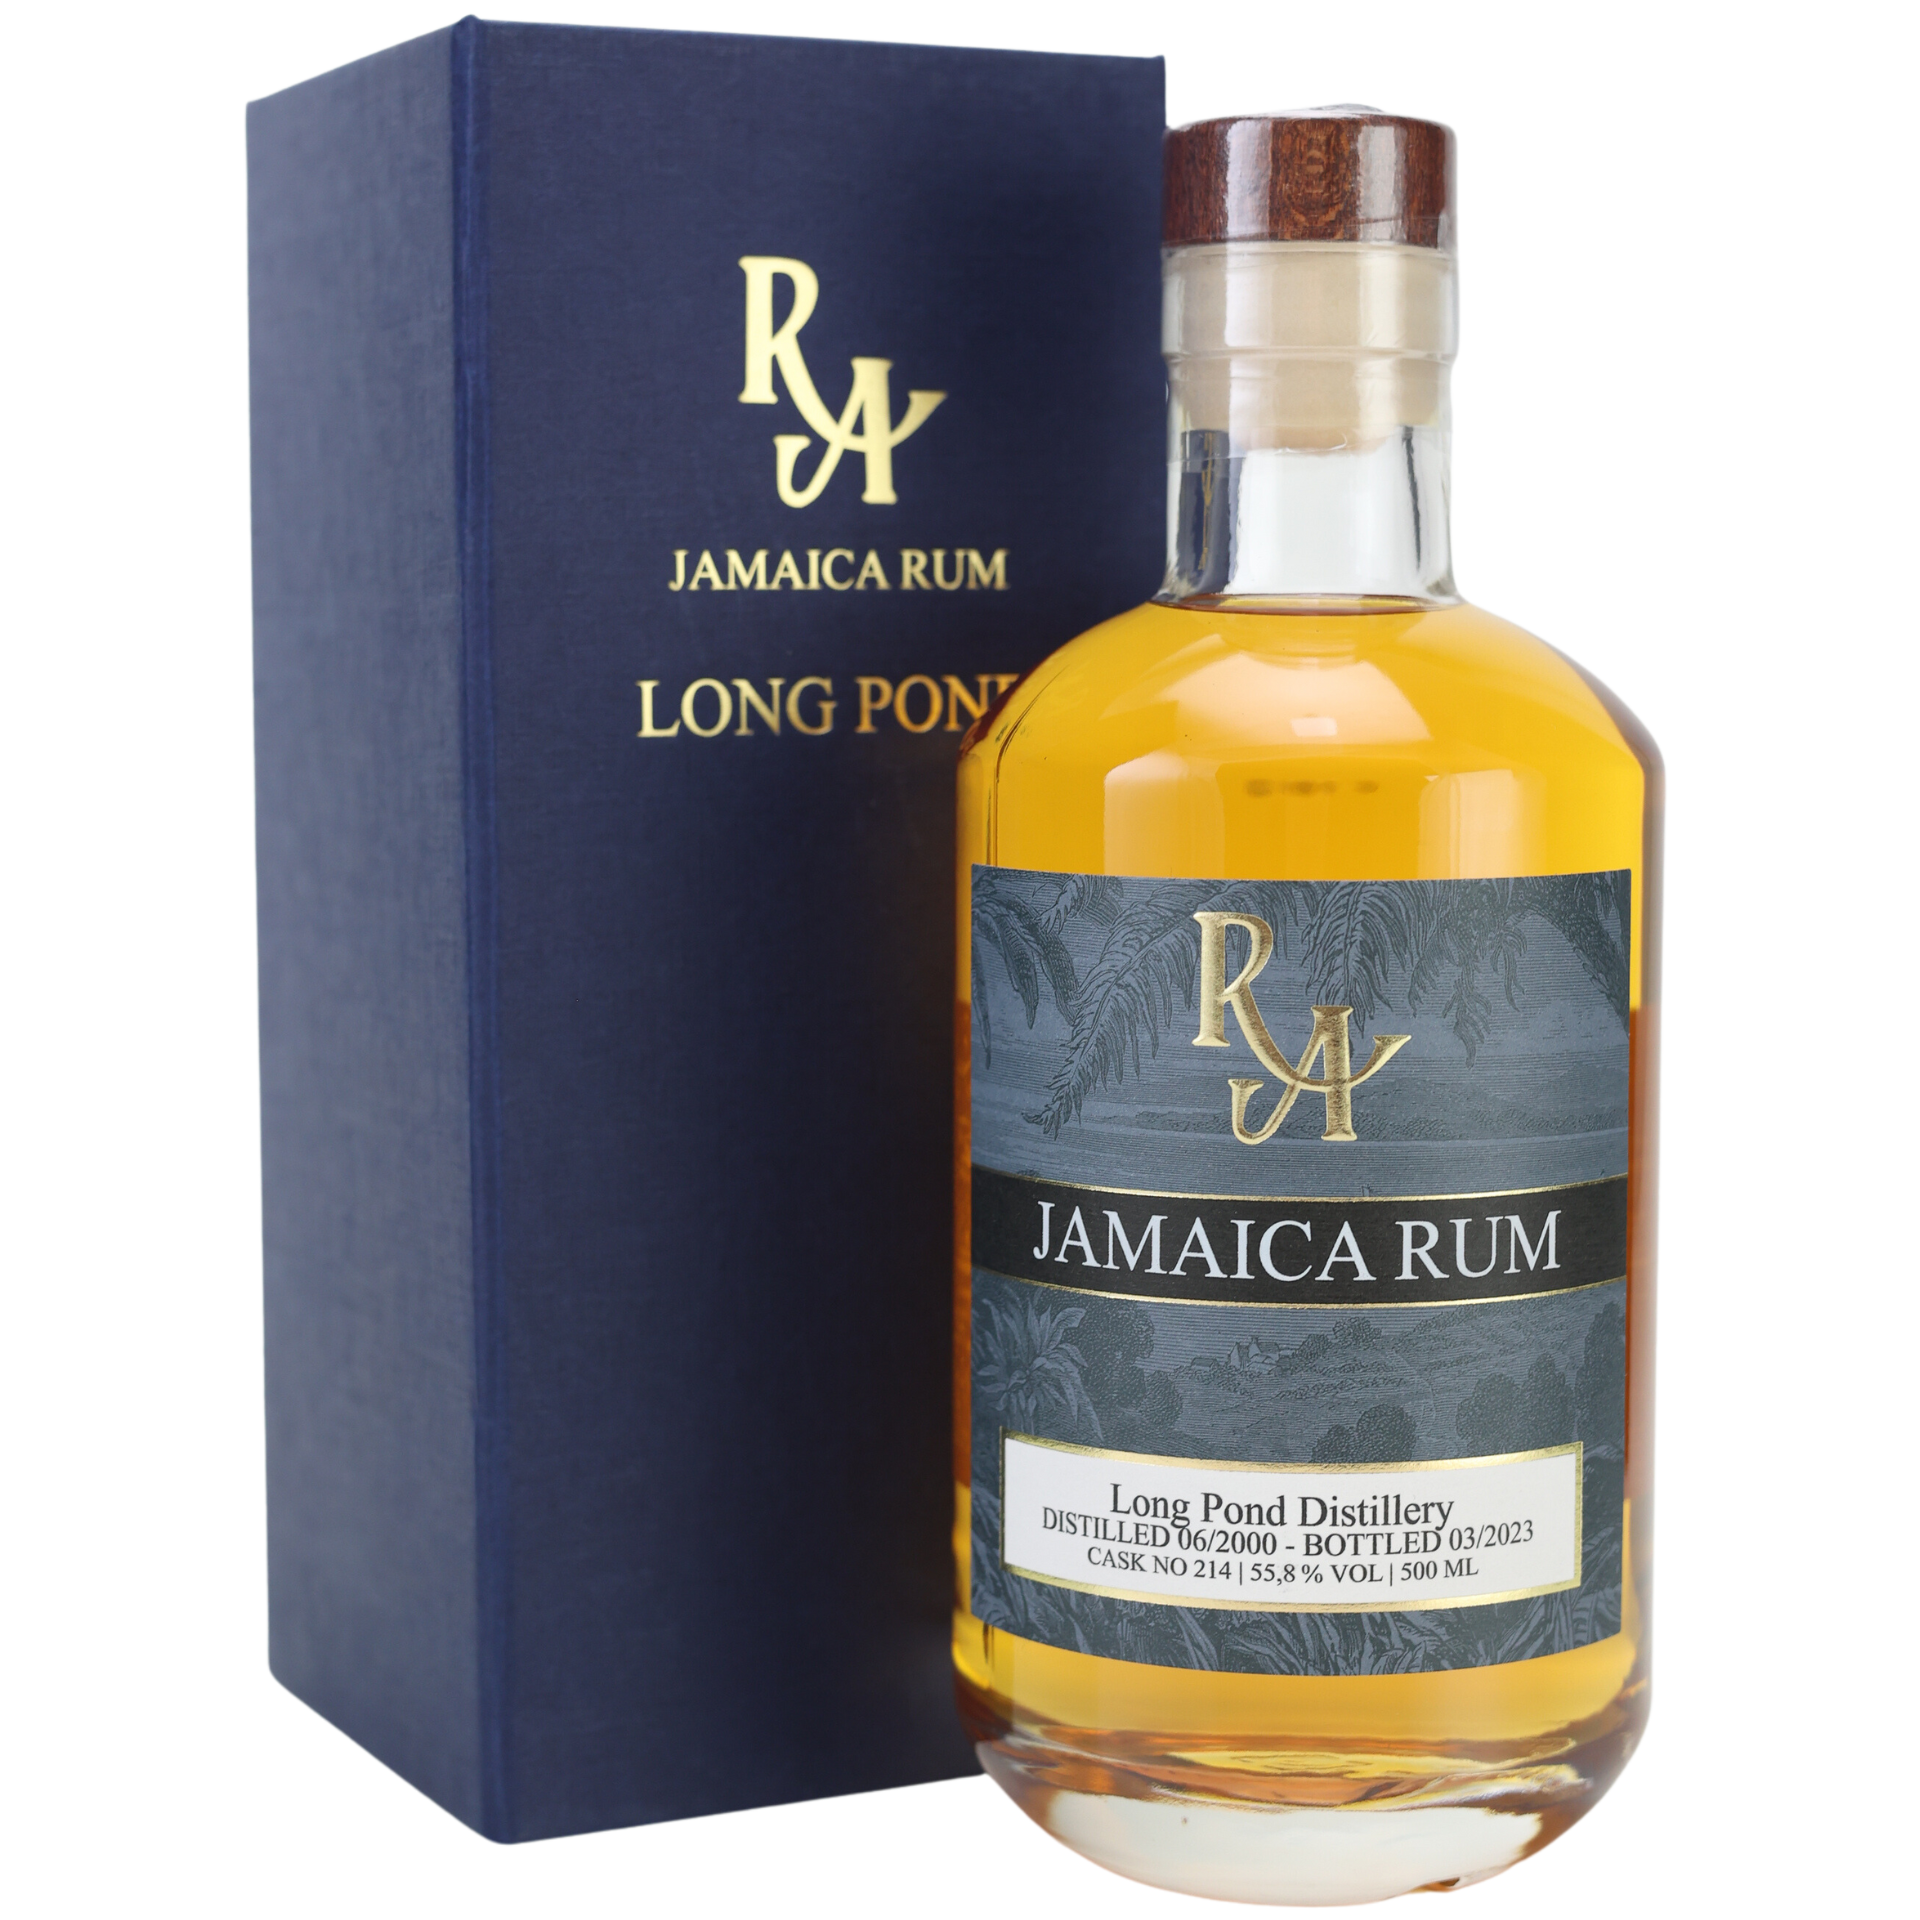 Rum Artesanal Jamaica Long Pond Rum 55,8% 0,5l